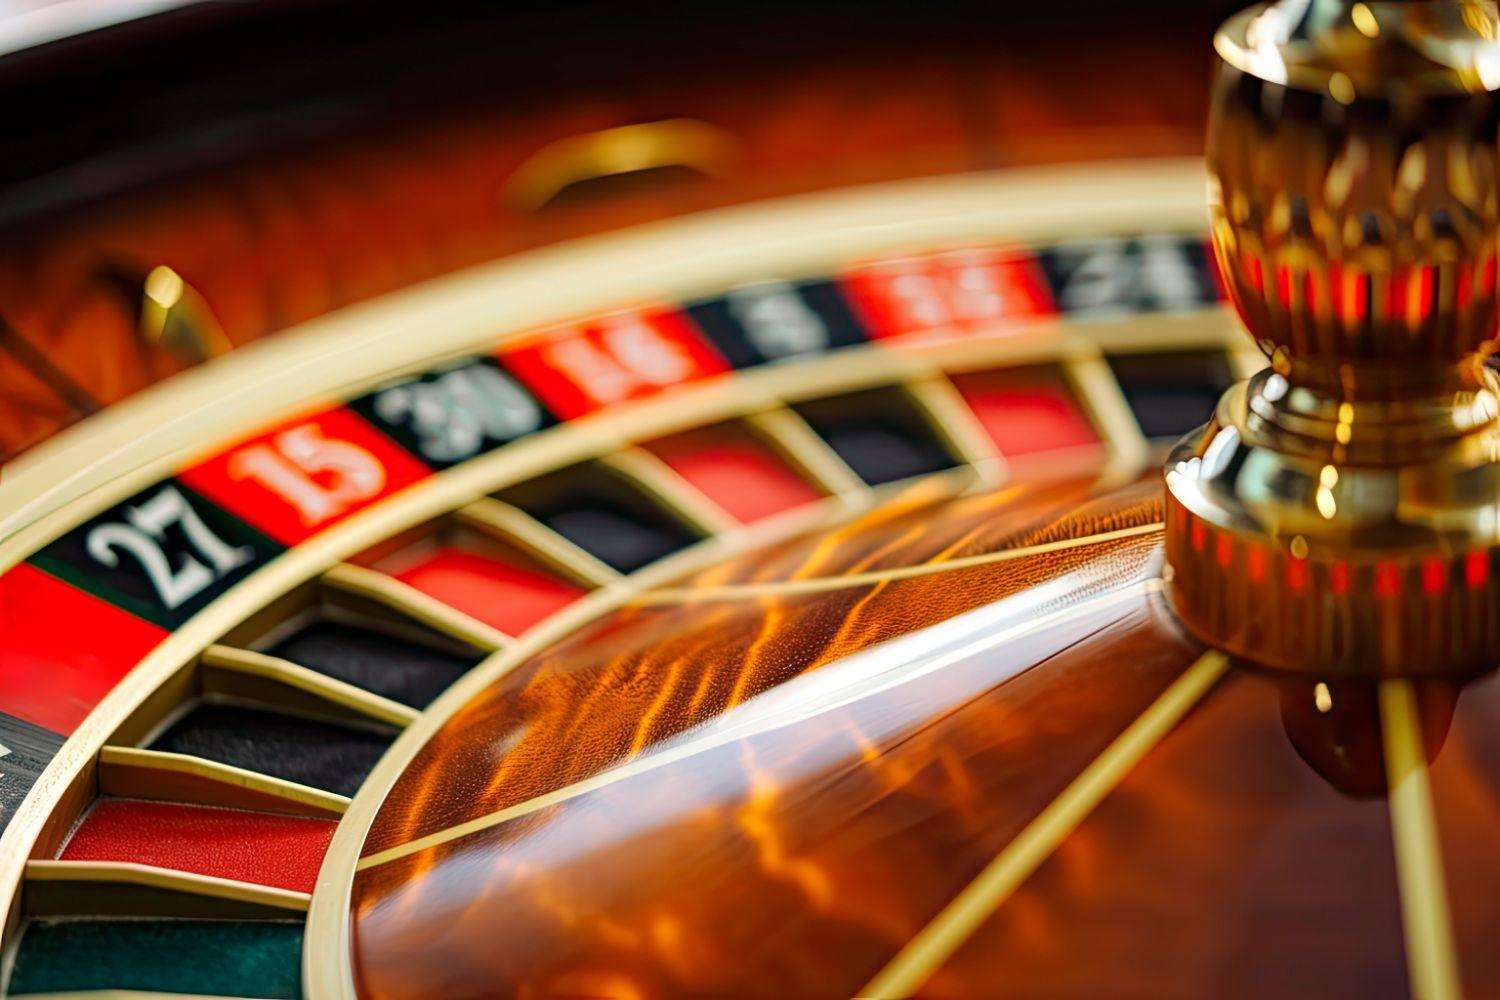 Jouer gratuitement sur Plinko, un casino en ligne : quelques astuces